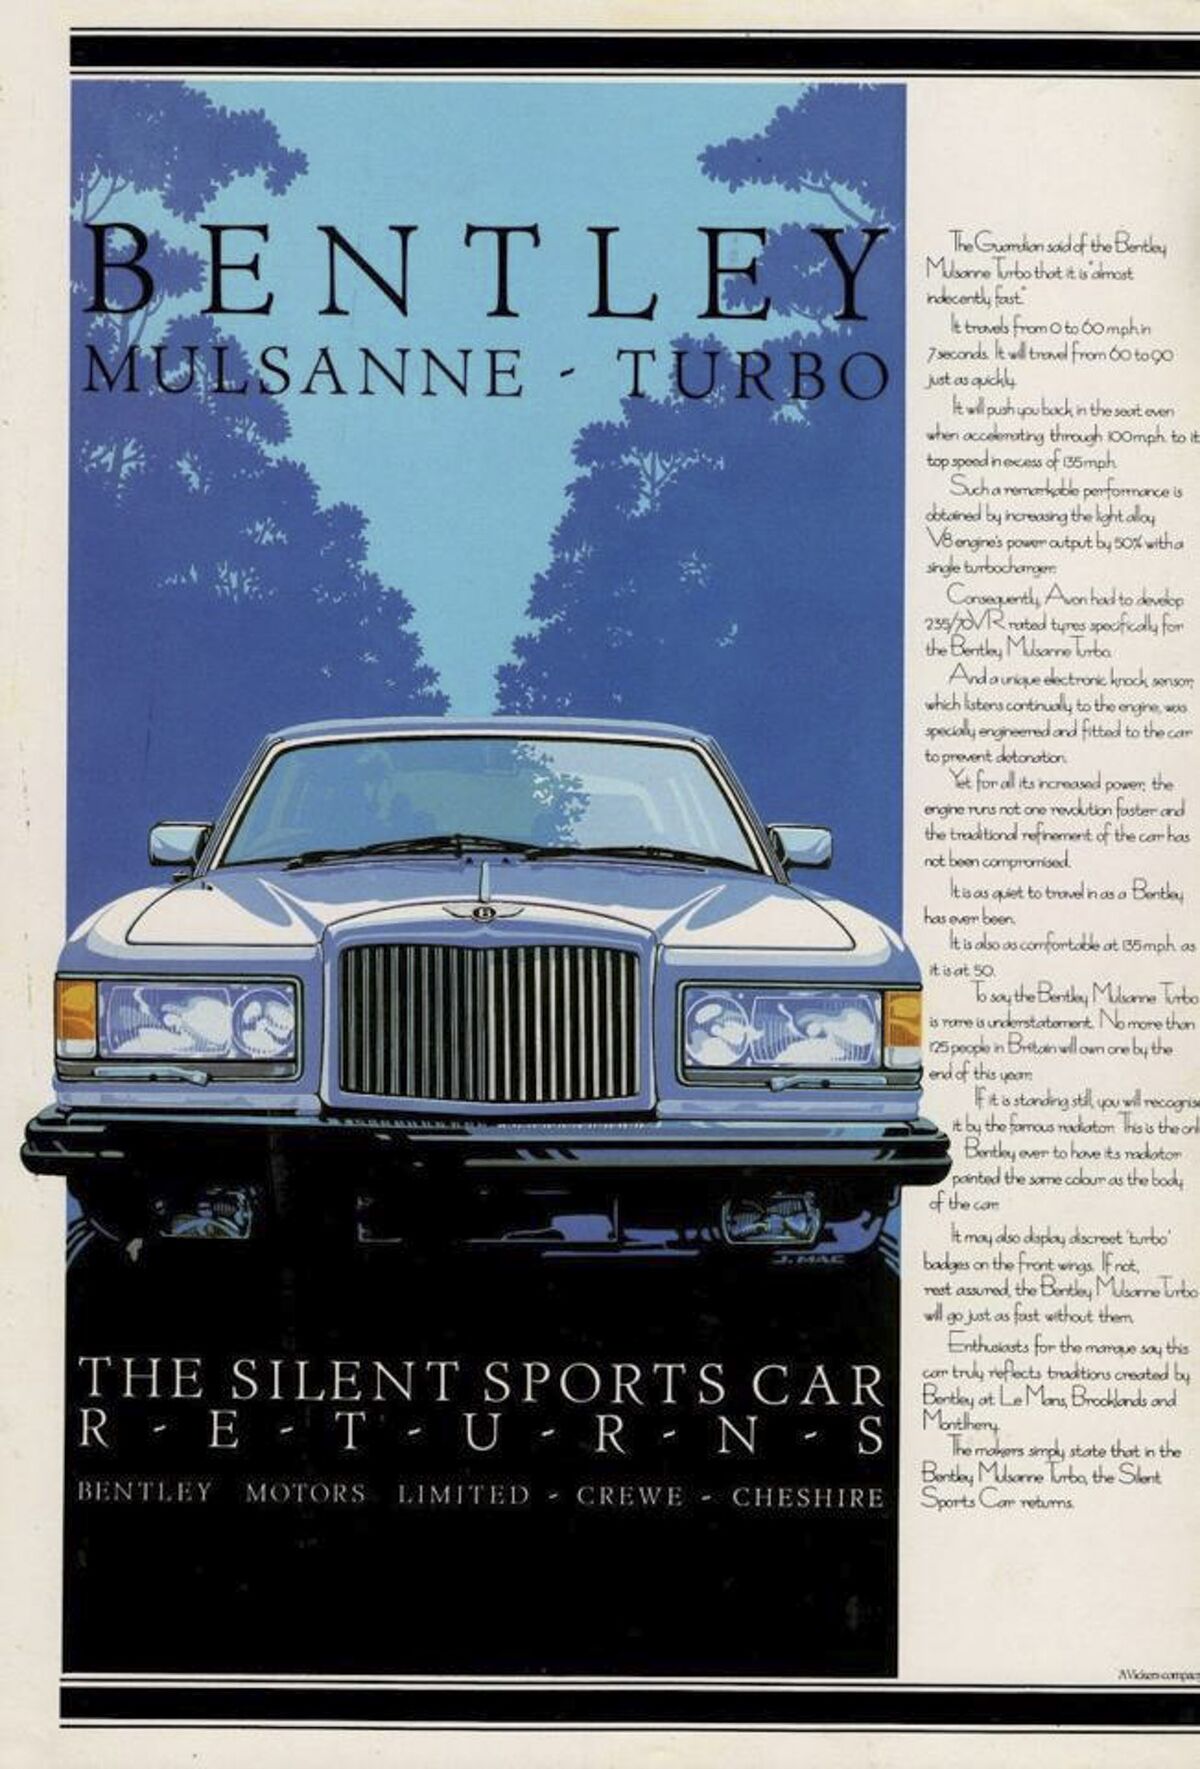 1980s car ads